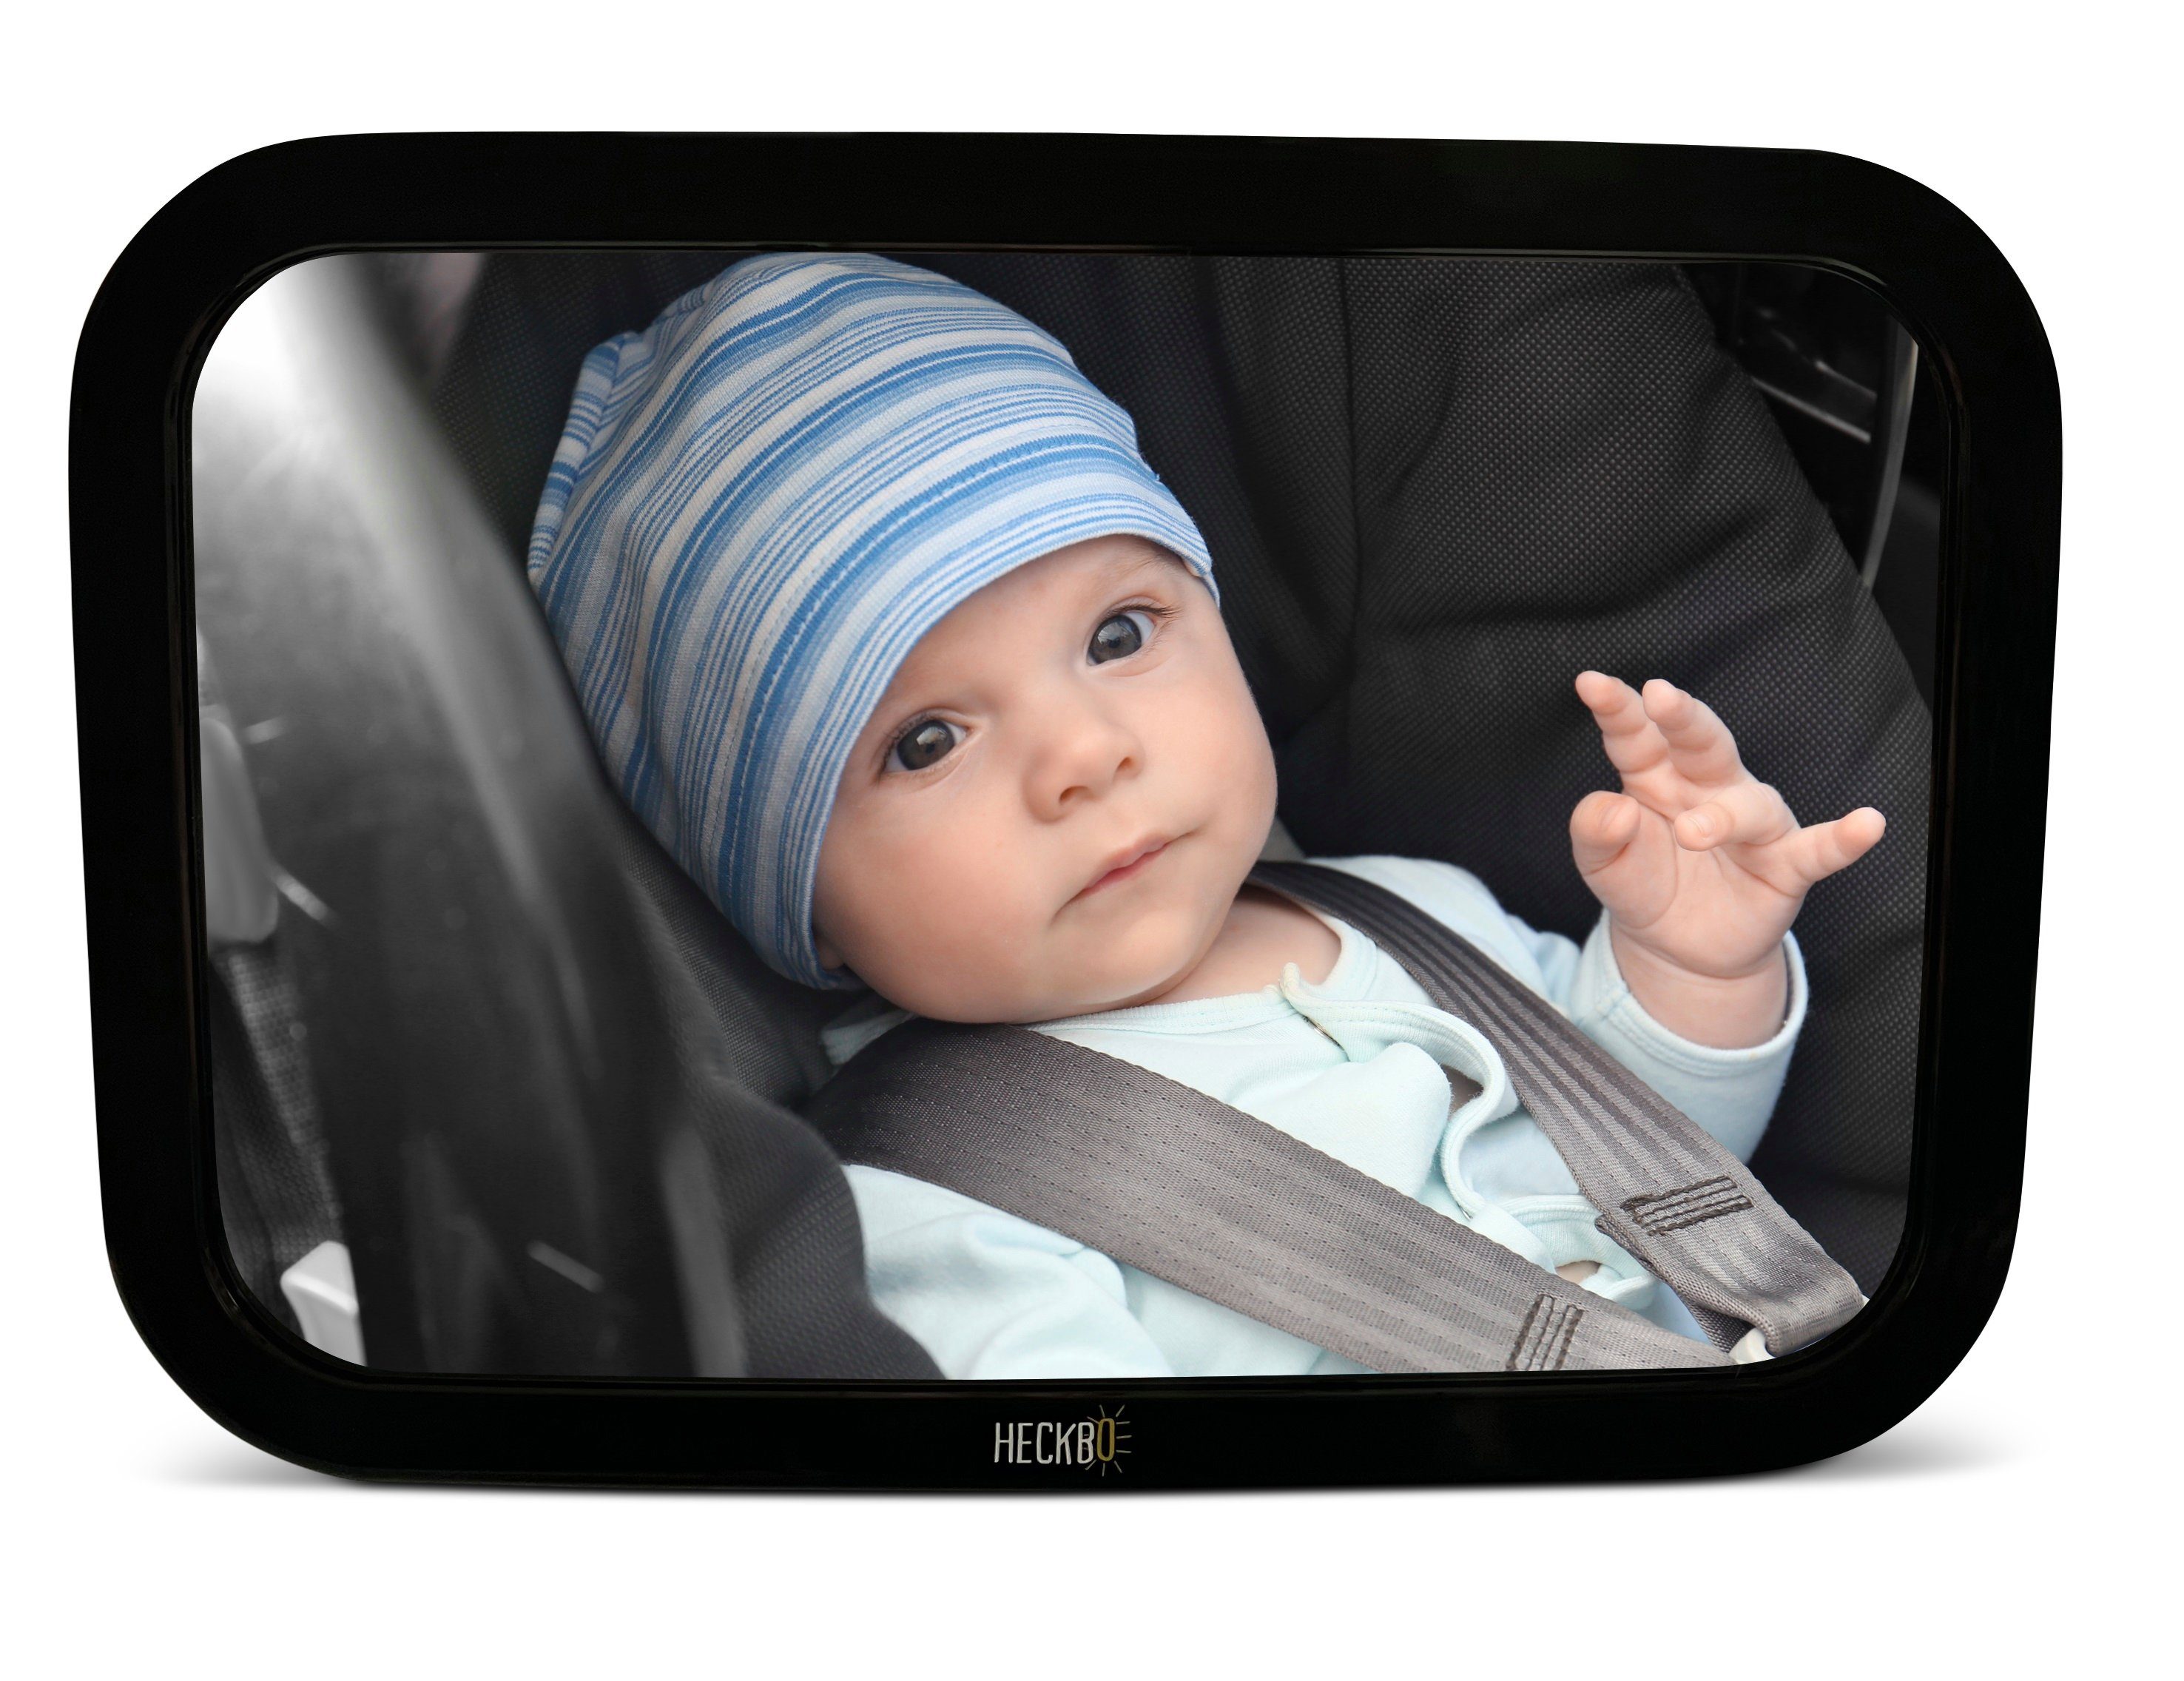 Spiegel Babyschale Baby für Babyspiegel Auto bruchsicherer HECKBO Auto-Rückspiegel